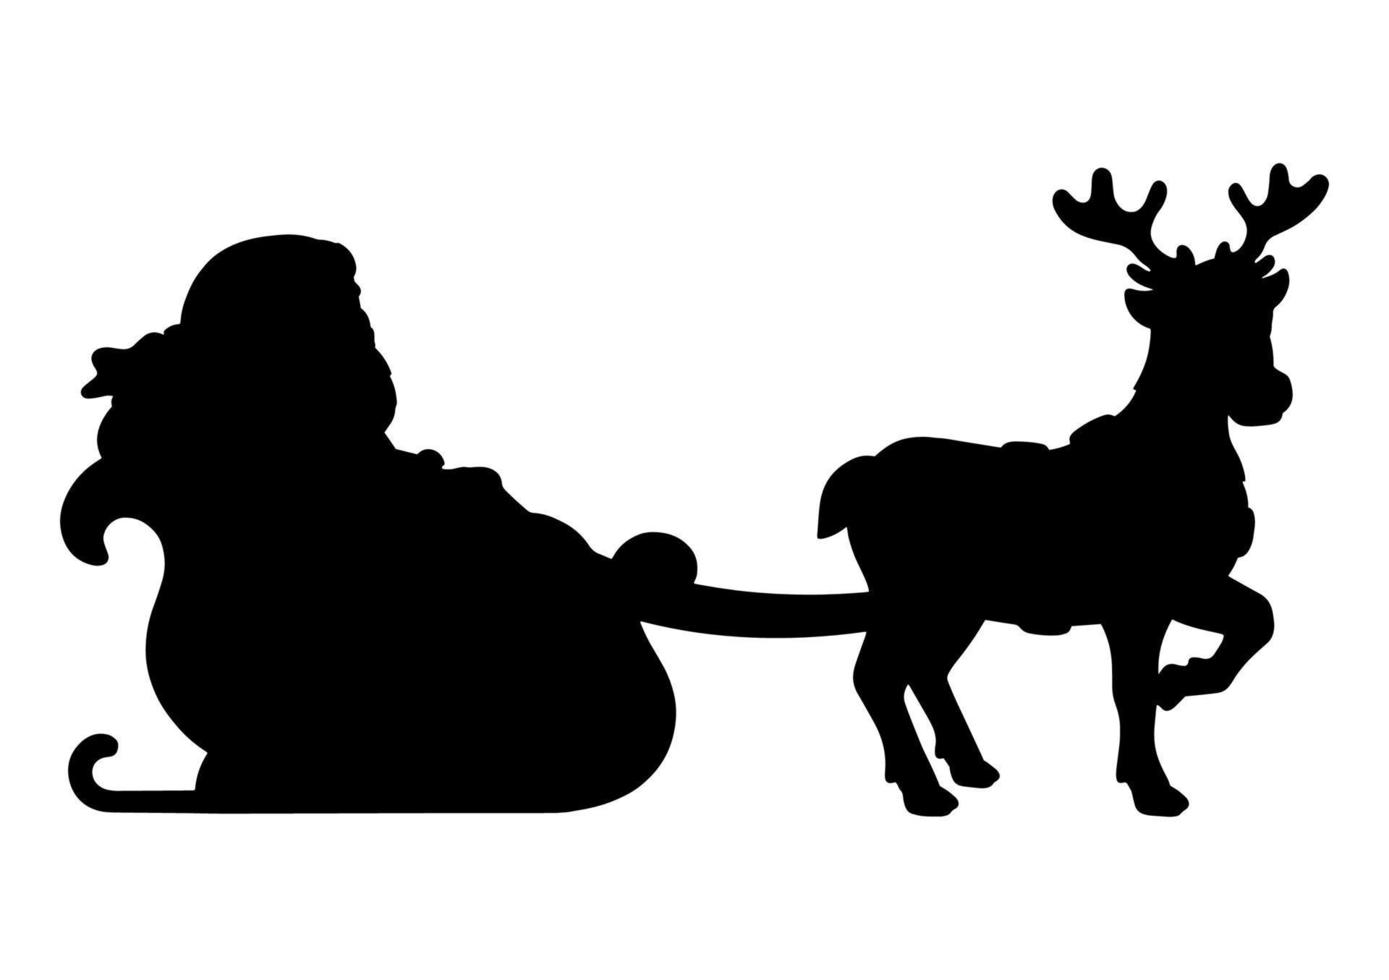 Papai Noel carrega presentes de Natal em um trenó de renas. silhueta negra. elemento de design. ilustração vetorial isolada no fundo branco. modelo para livros, adesivos, cartazes, cartões, roupas. vetor